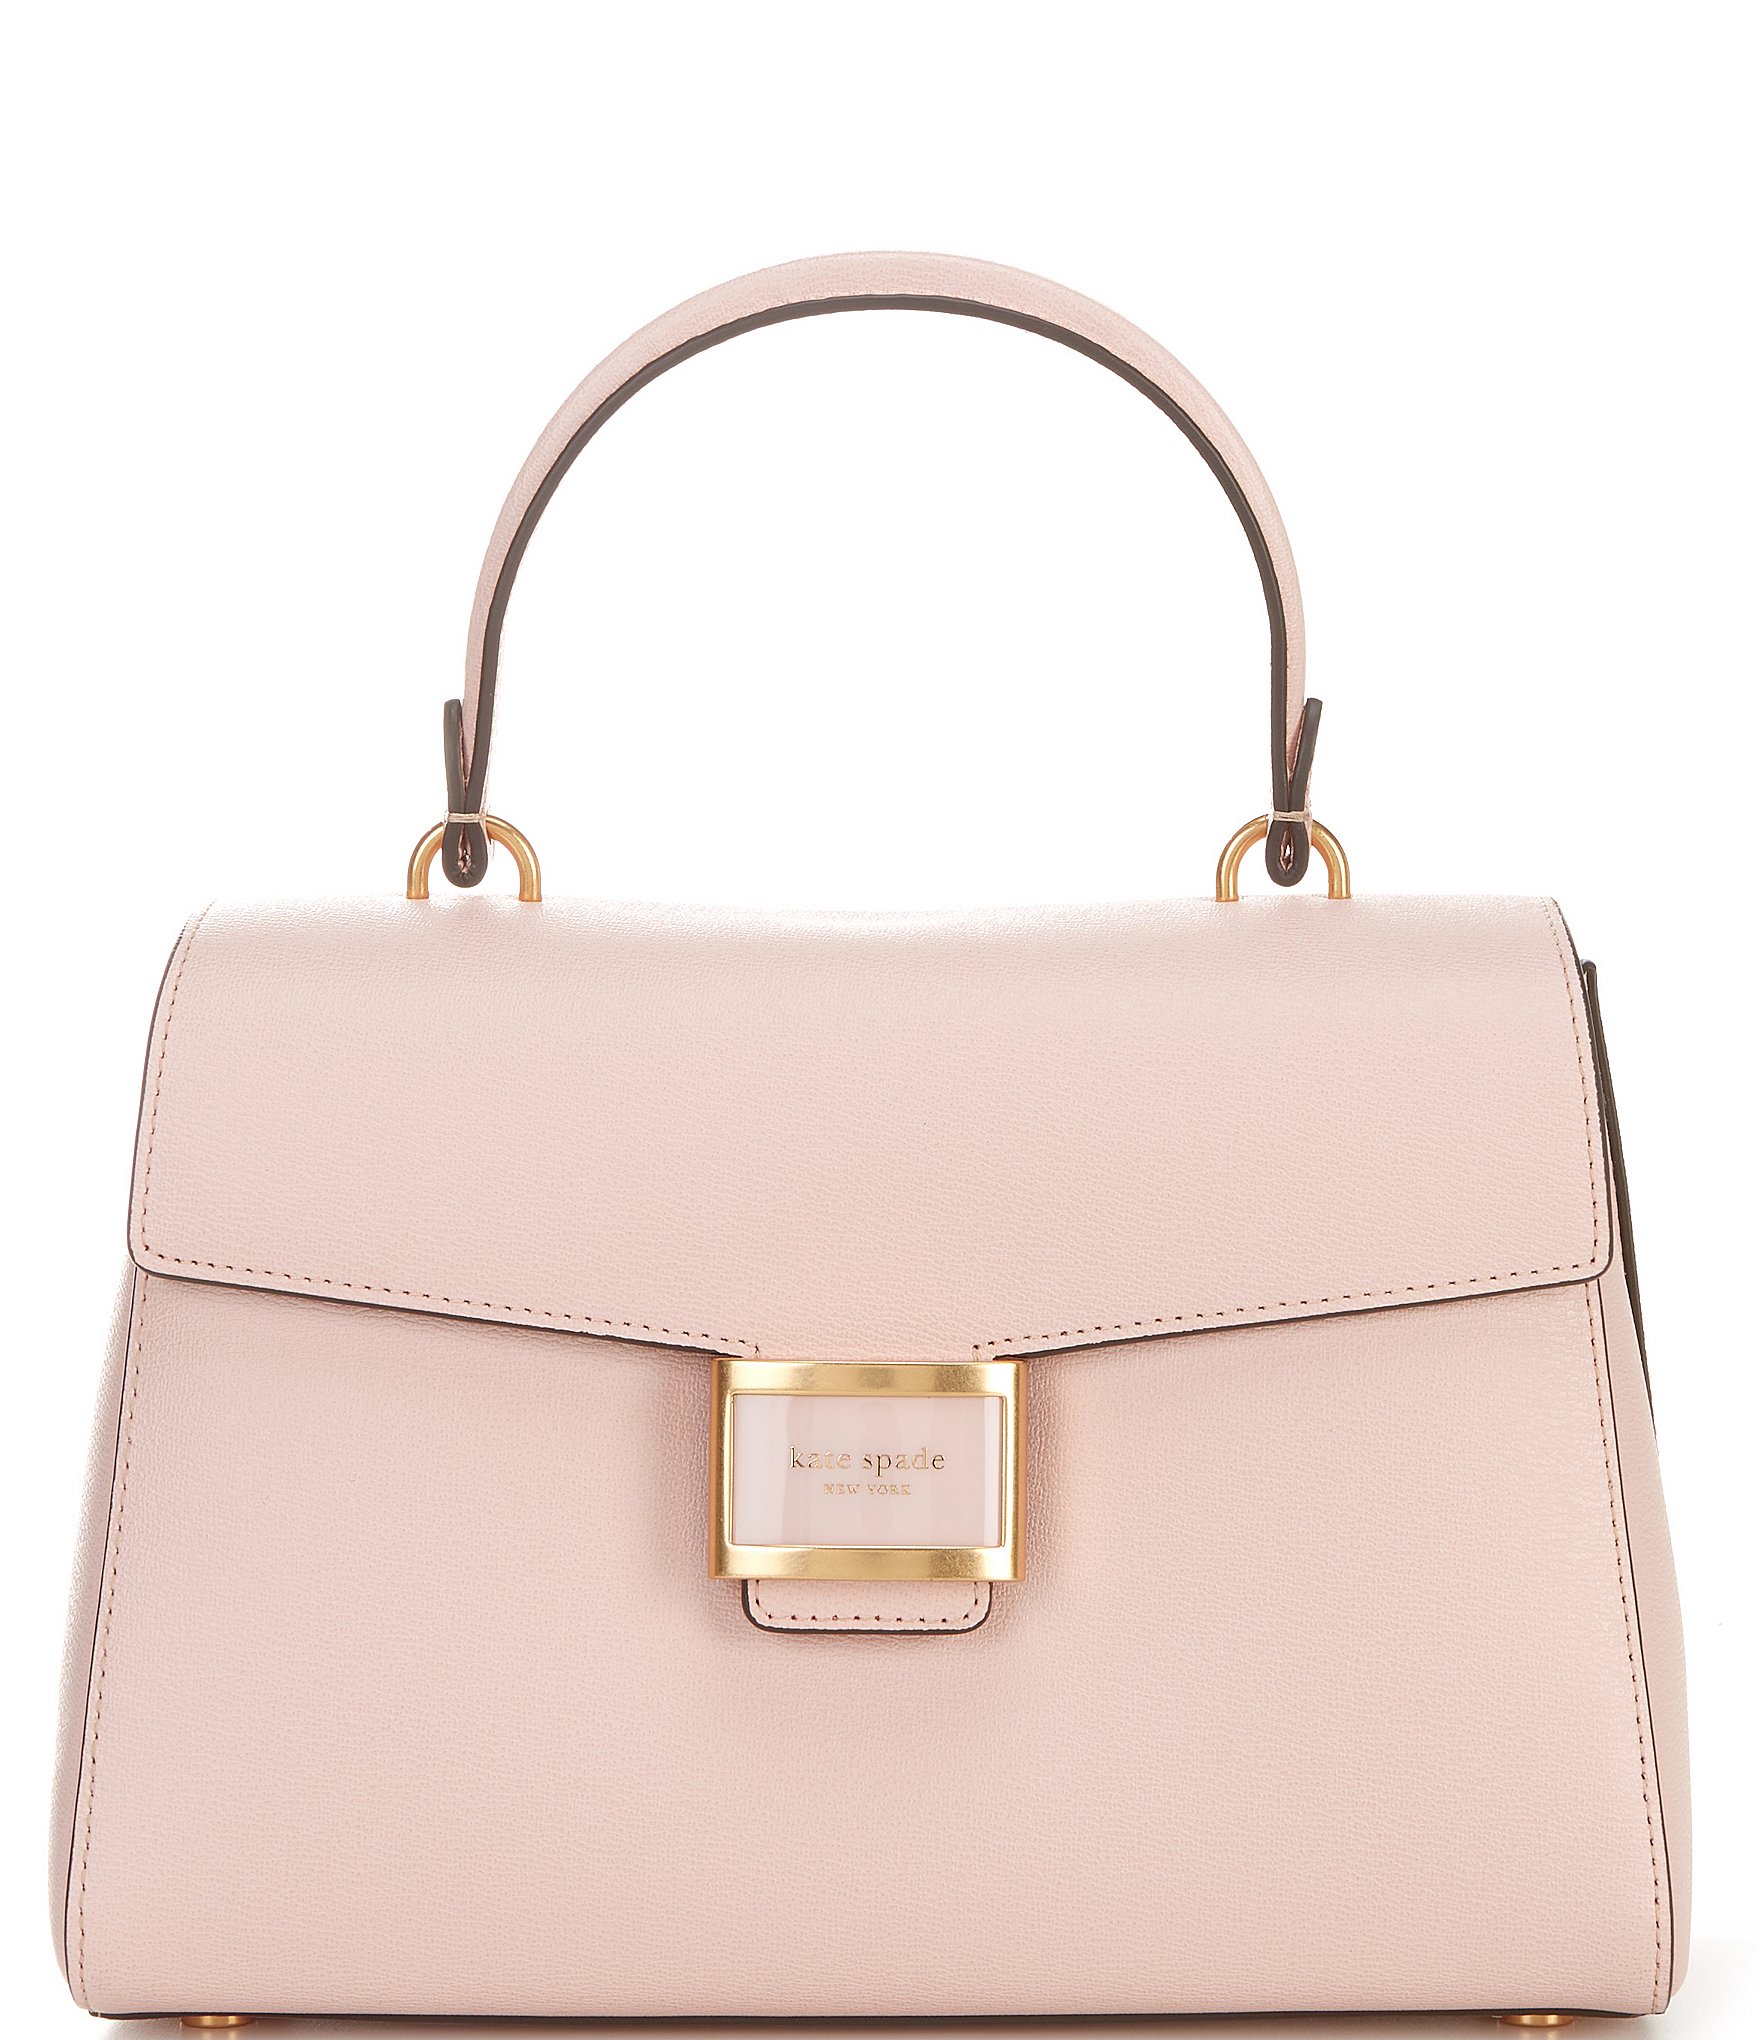 Kate Spade Light Pink Medium-Sized Handbag